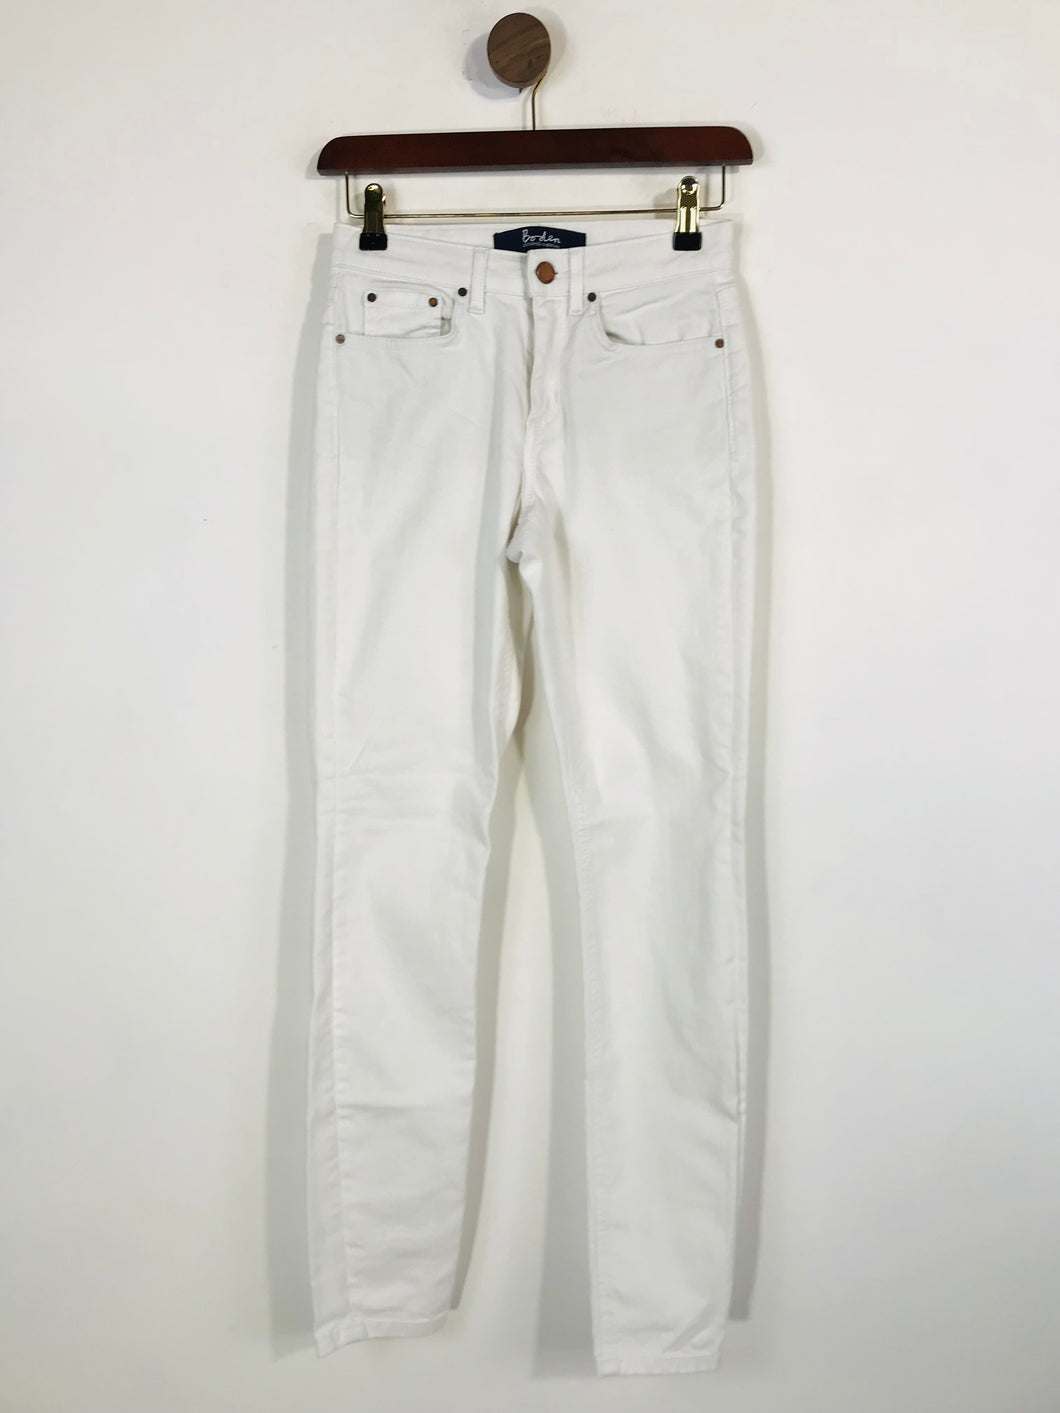 Boden Women's Skinny Jeans | UK6 | White